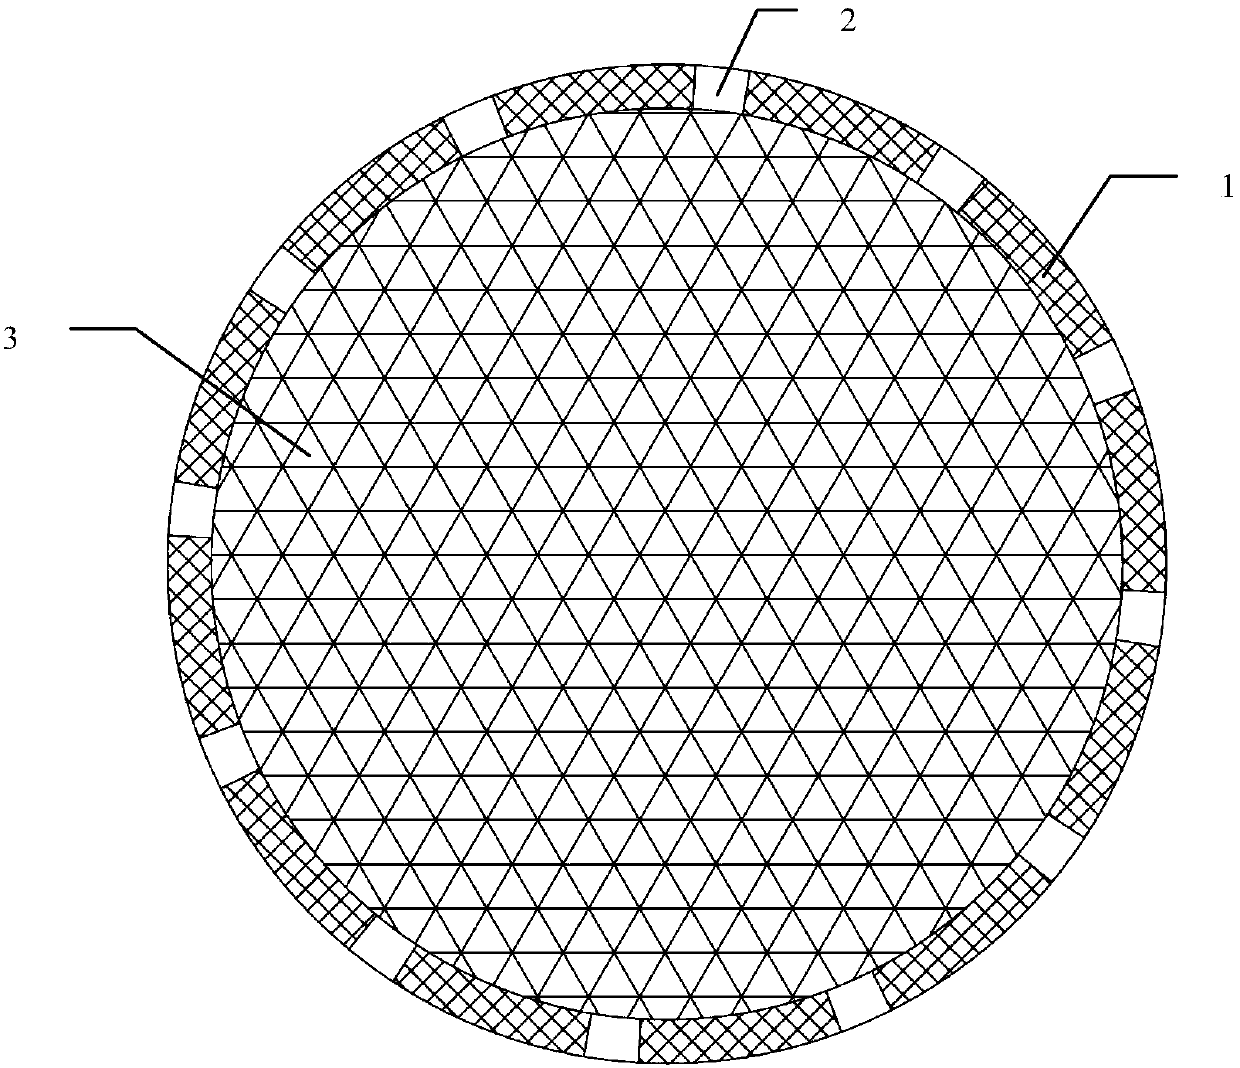 Nanofiber floating ball for reservoir